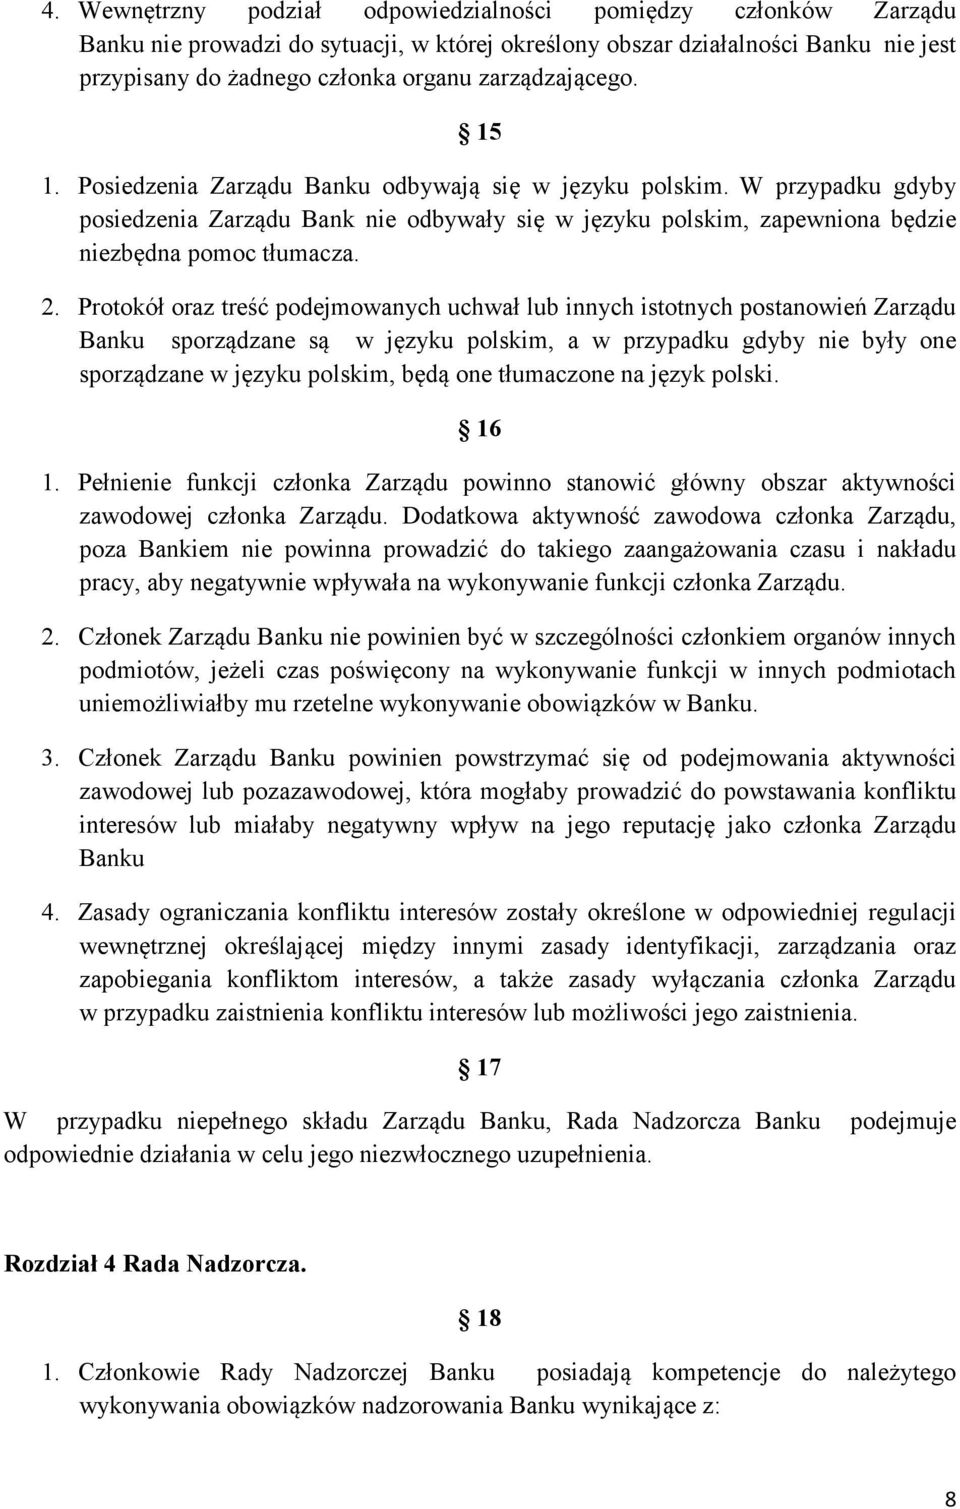 2. Protokół oraz treść podejmowanych uchwał lub innych istotnych postanowień Zarządu Banku sporządzane są w języku polskim, a w przypadku gdyby nie były one sporządzane w języku polskim, będą one